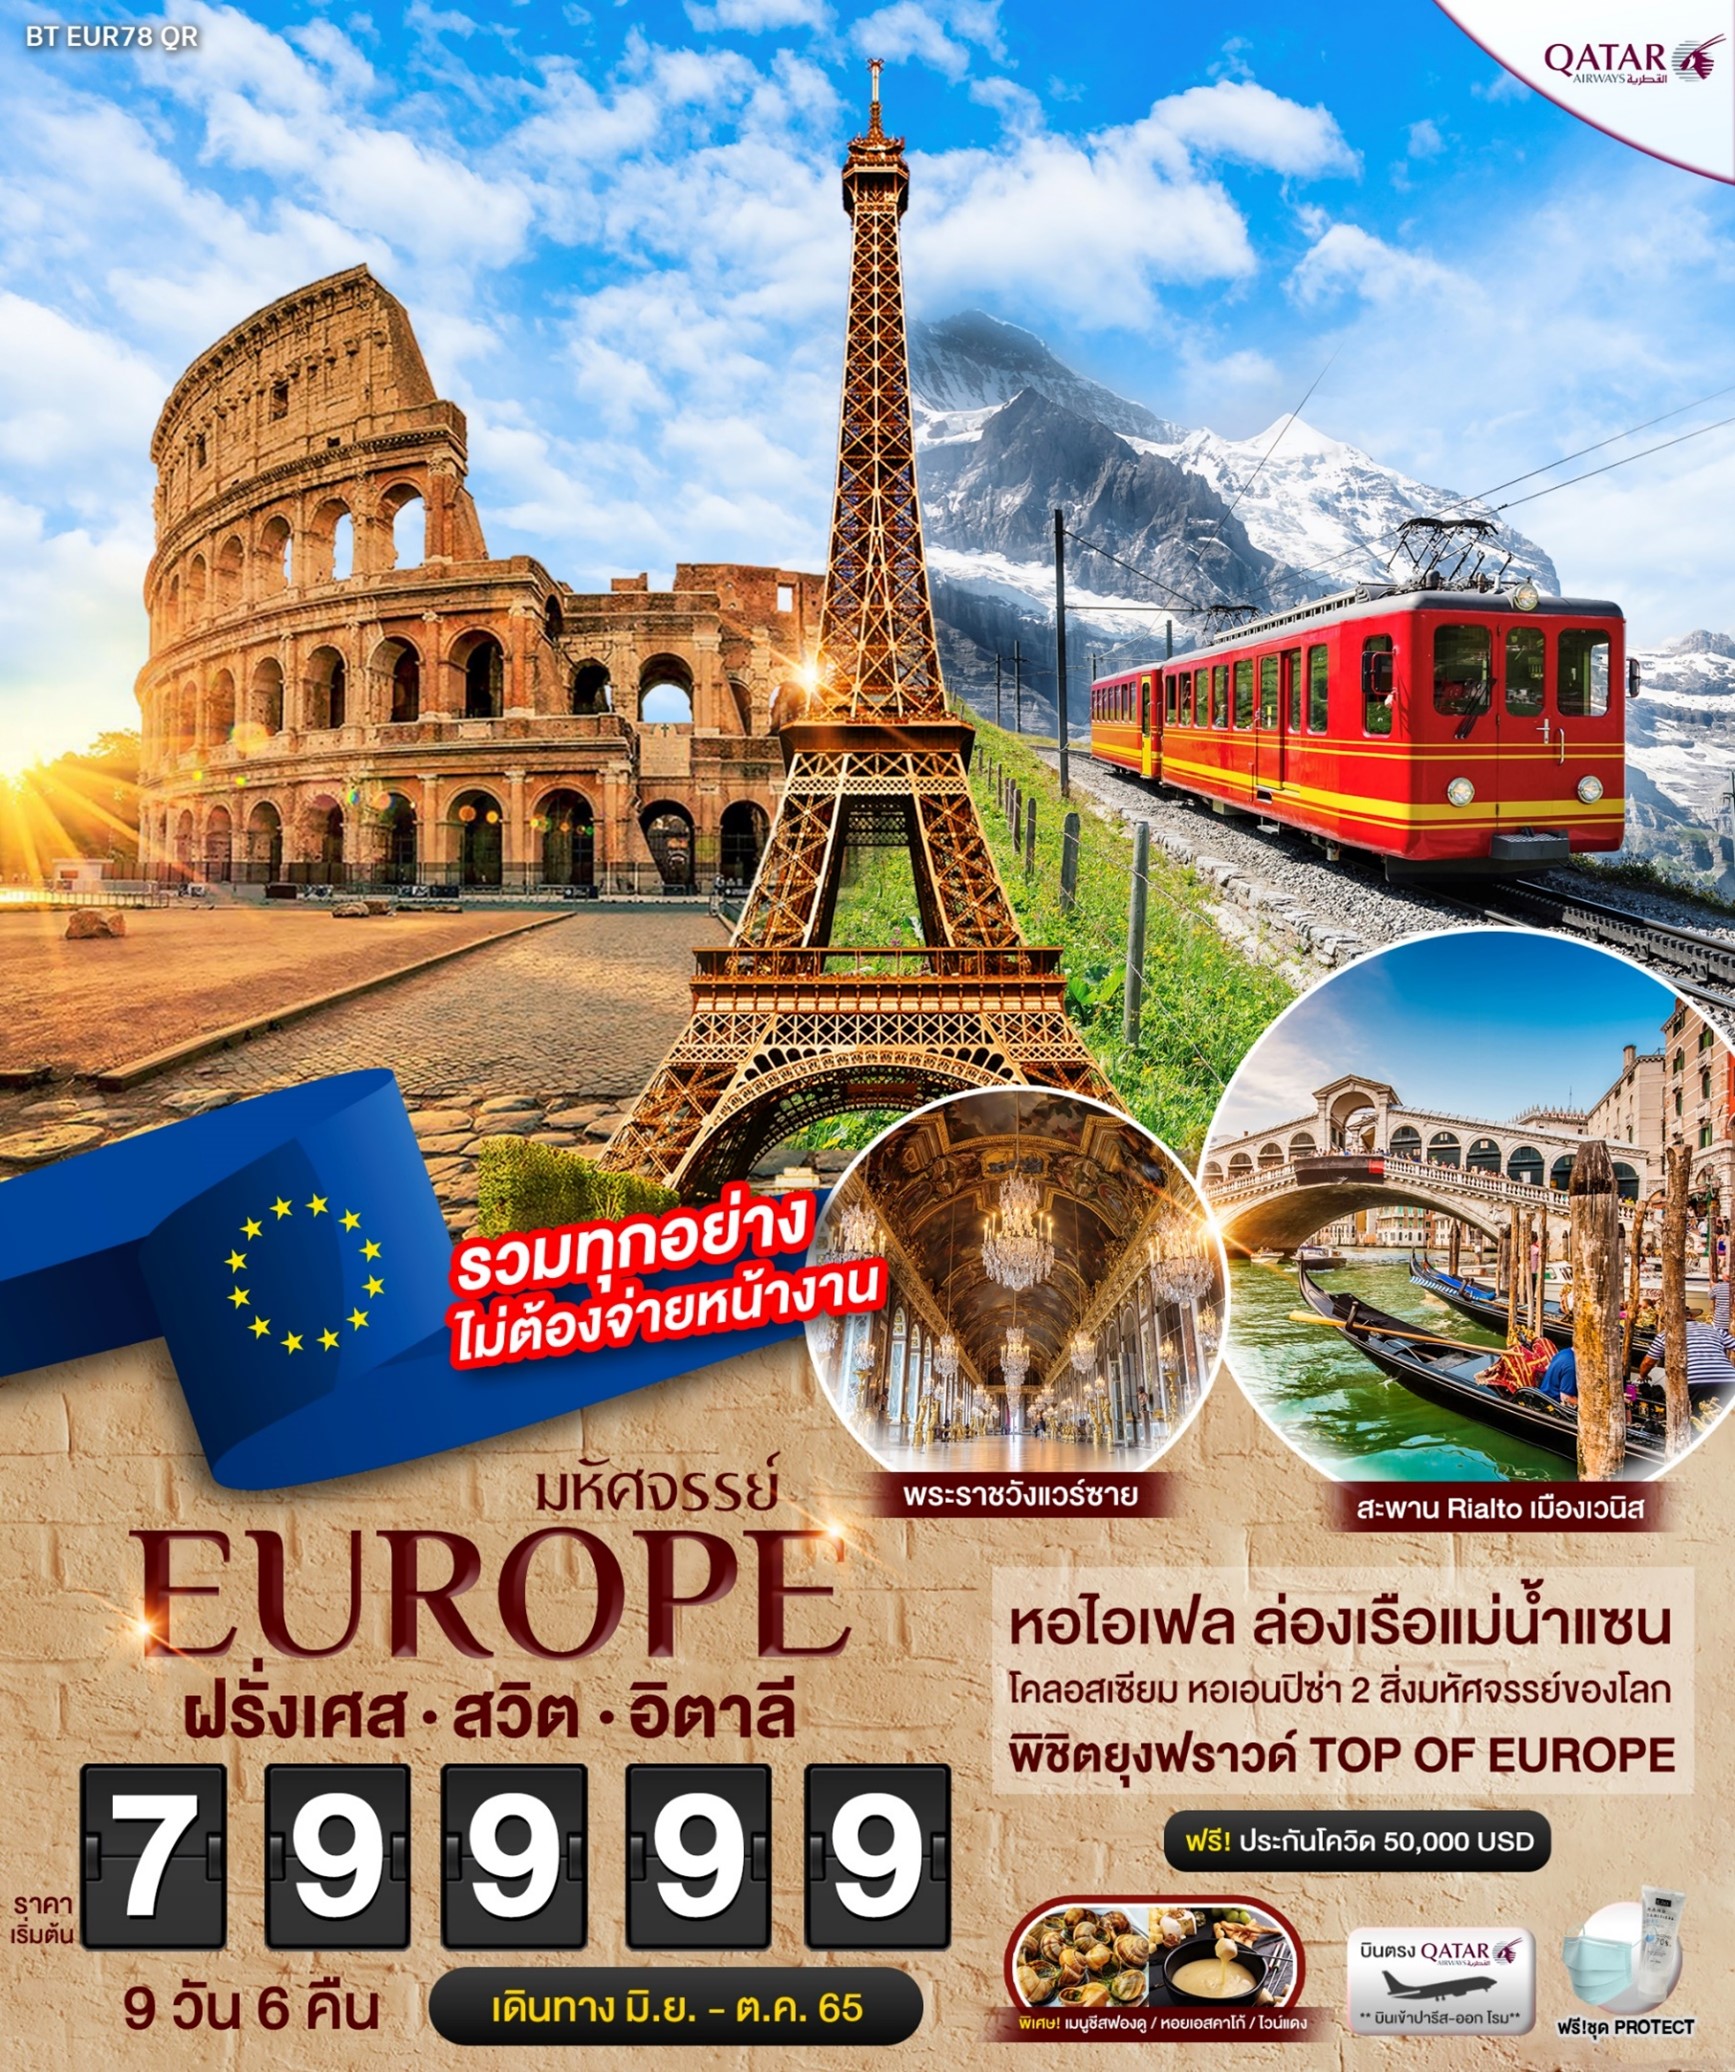 ทัวร์ยุโรป มหัศจรรย์ EUROPE ฝรั่งเศส สวิท อิตาลี